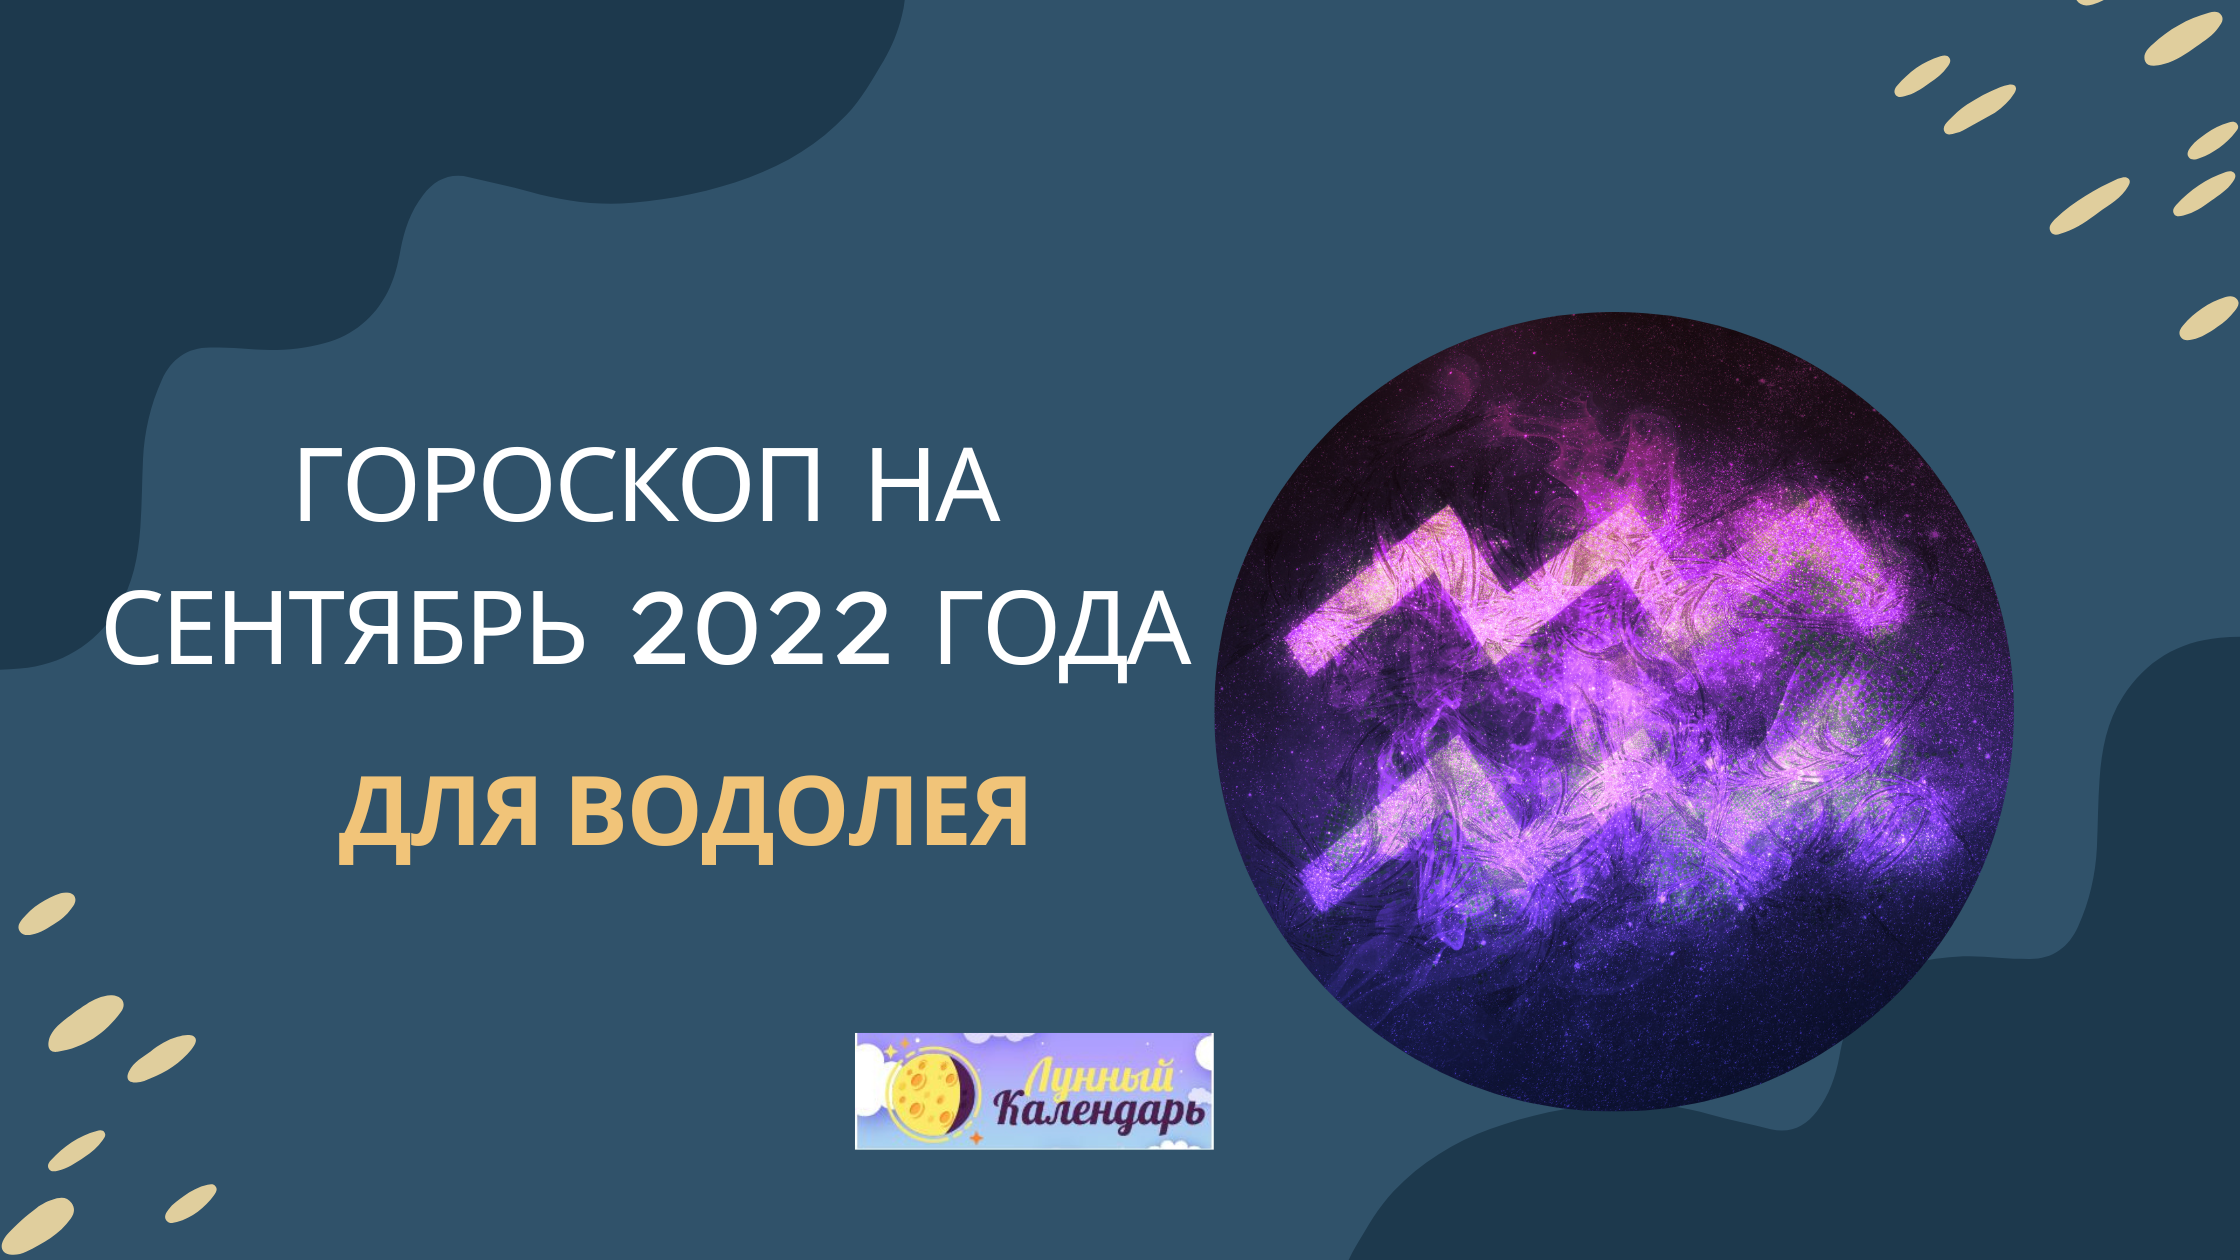 Гороскоп на сентябрь 2022 года Водолей